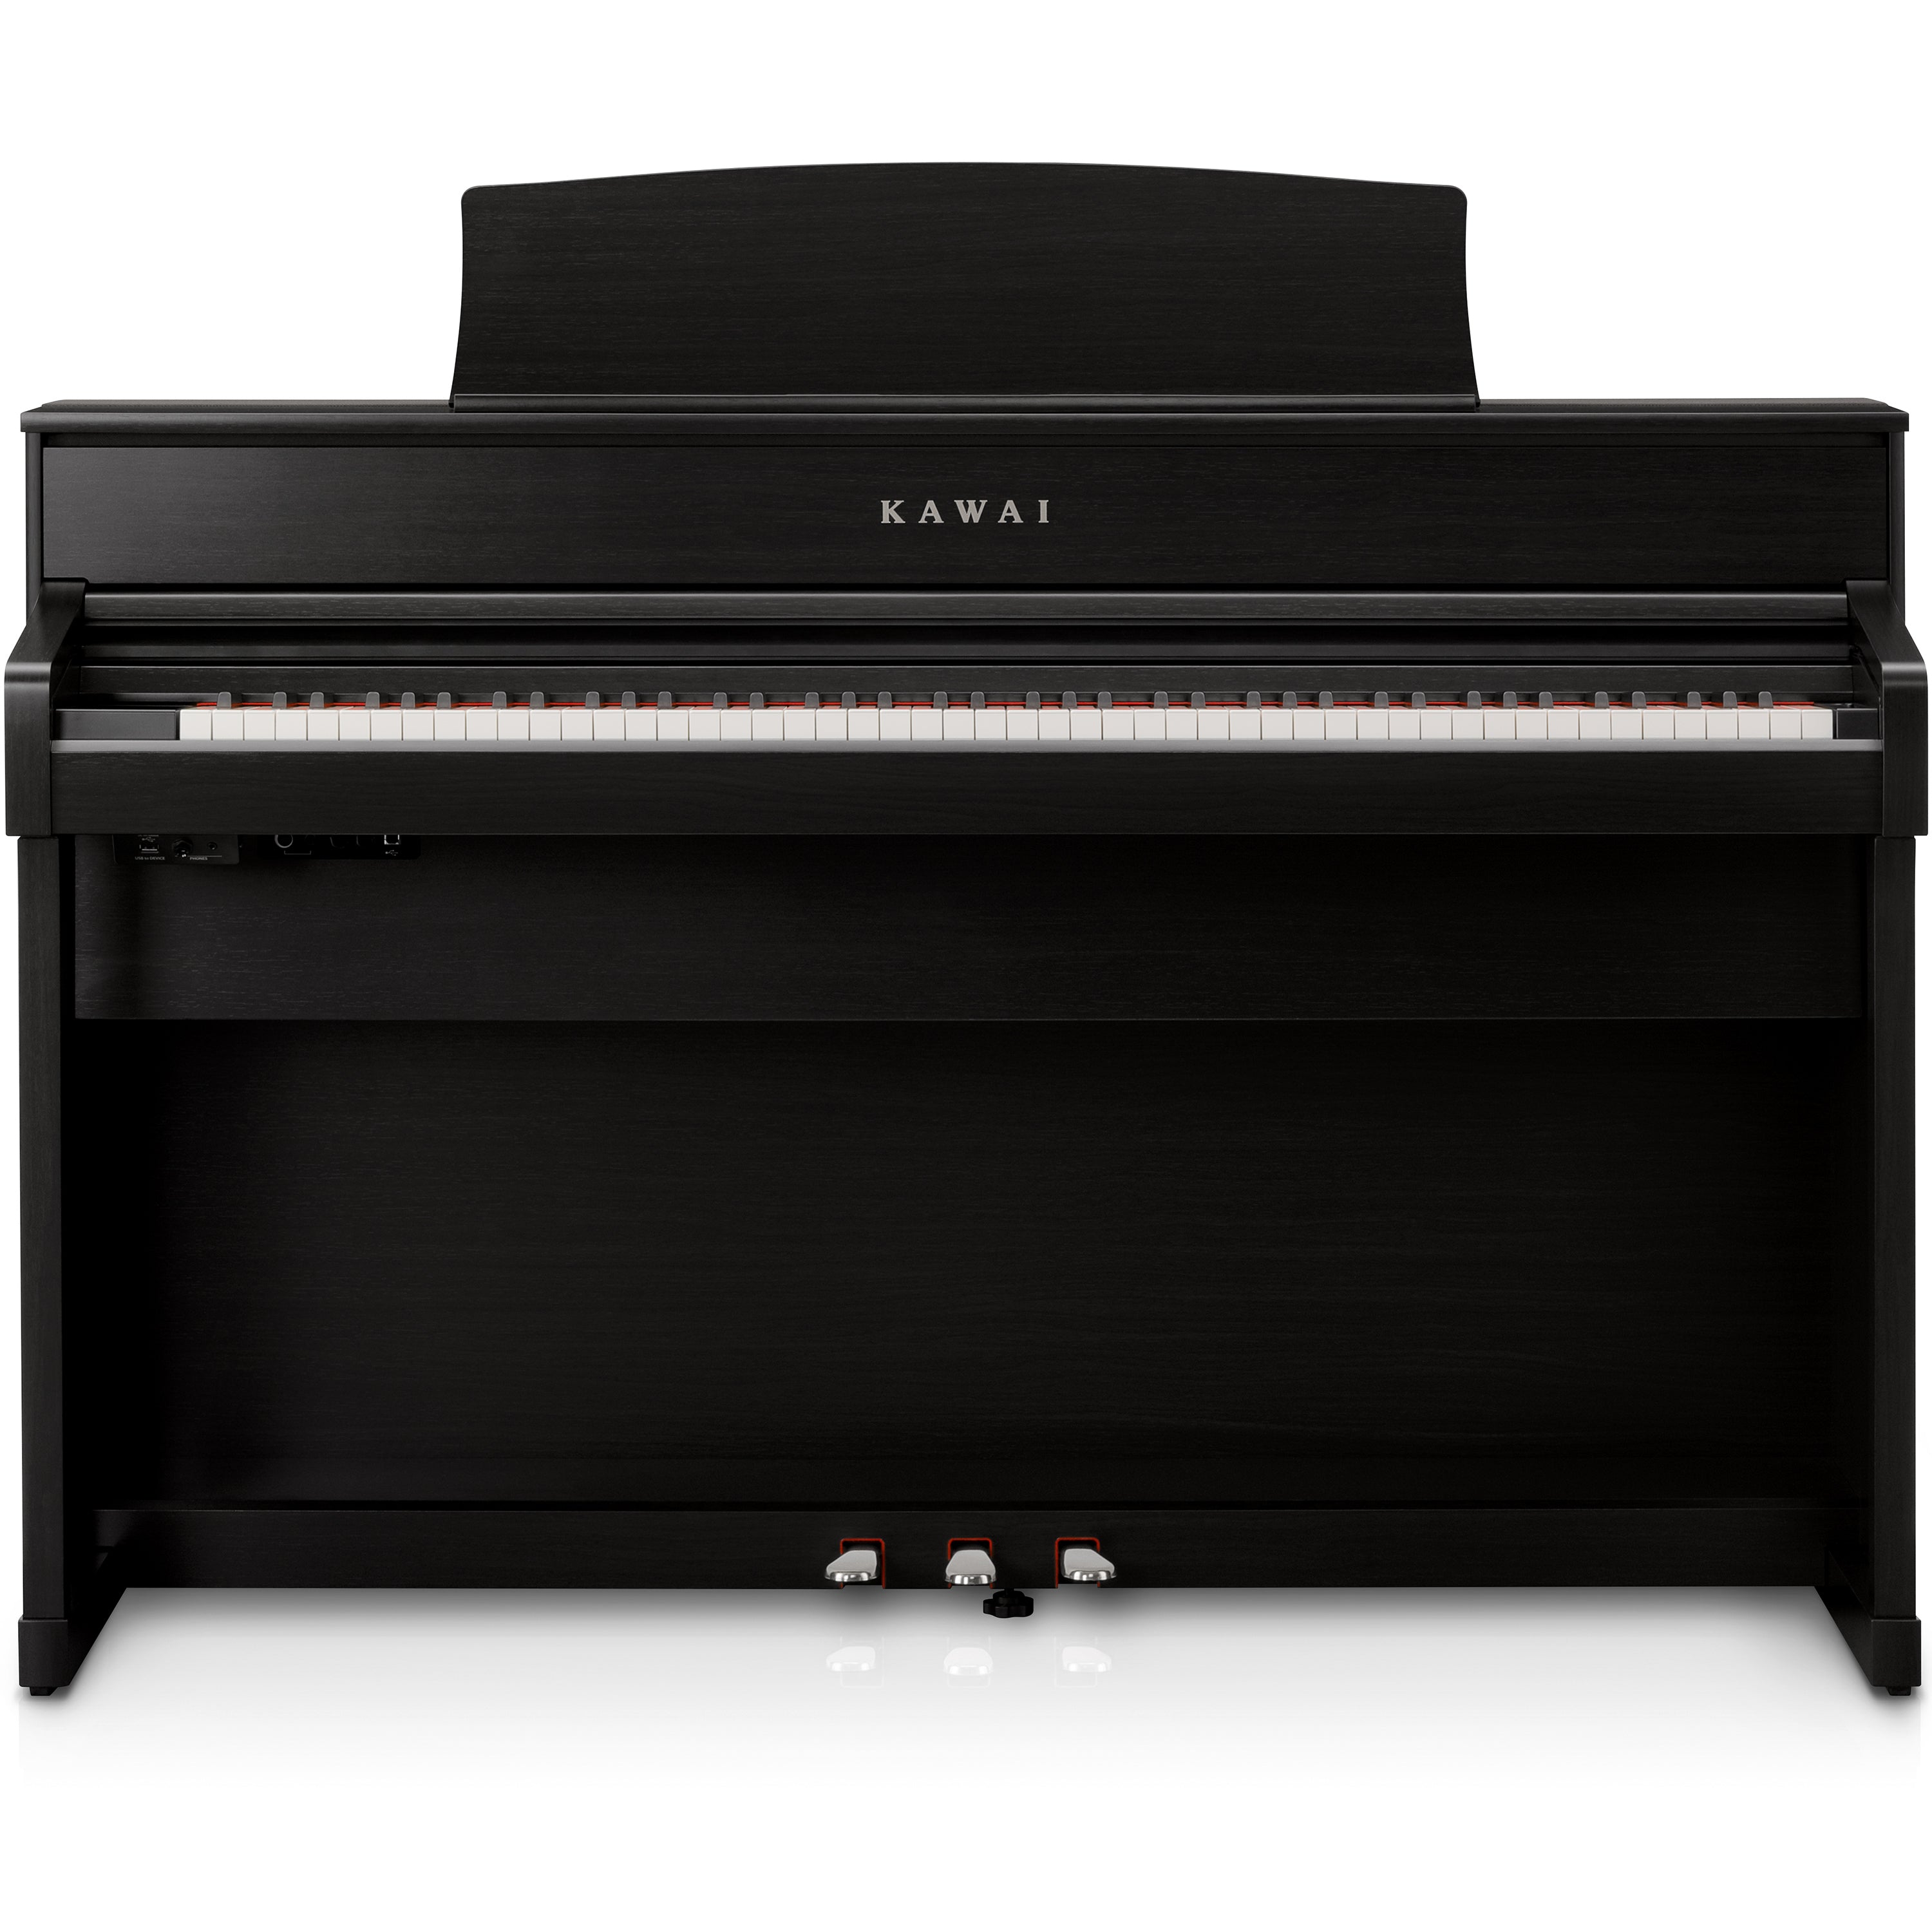 Kawai CA701 Digital Piano - Satin Black - Front view